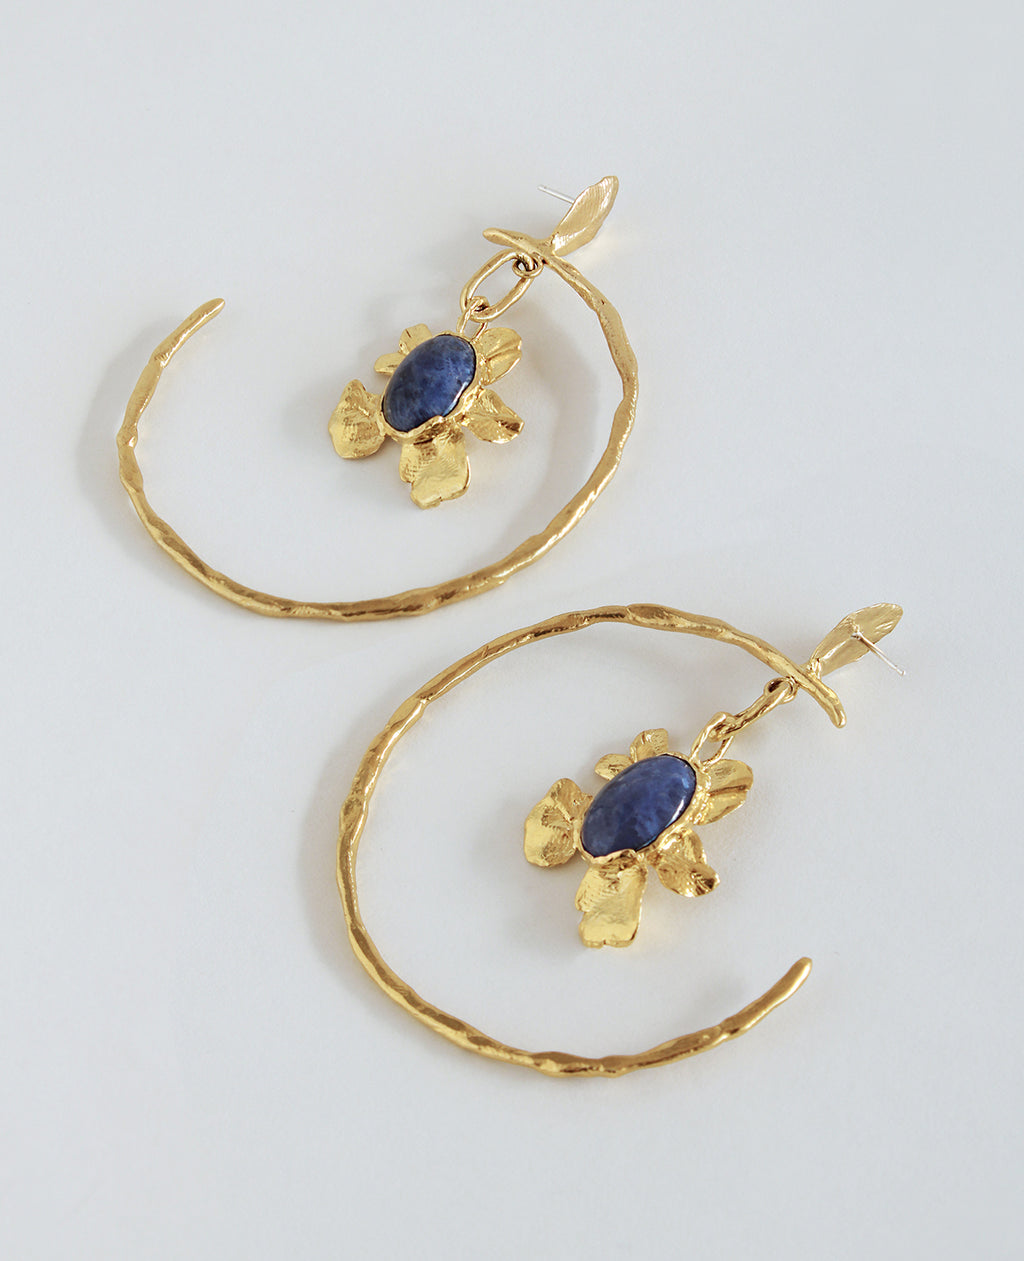 SCORPIO RISING // anneaux dorés - Bijoux ORA-C - bijoux faits main par Caroline Pham, designer indépendante basée à Montréal.